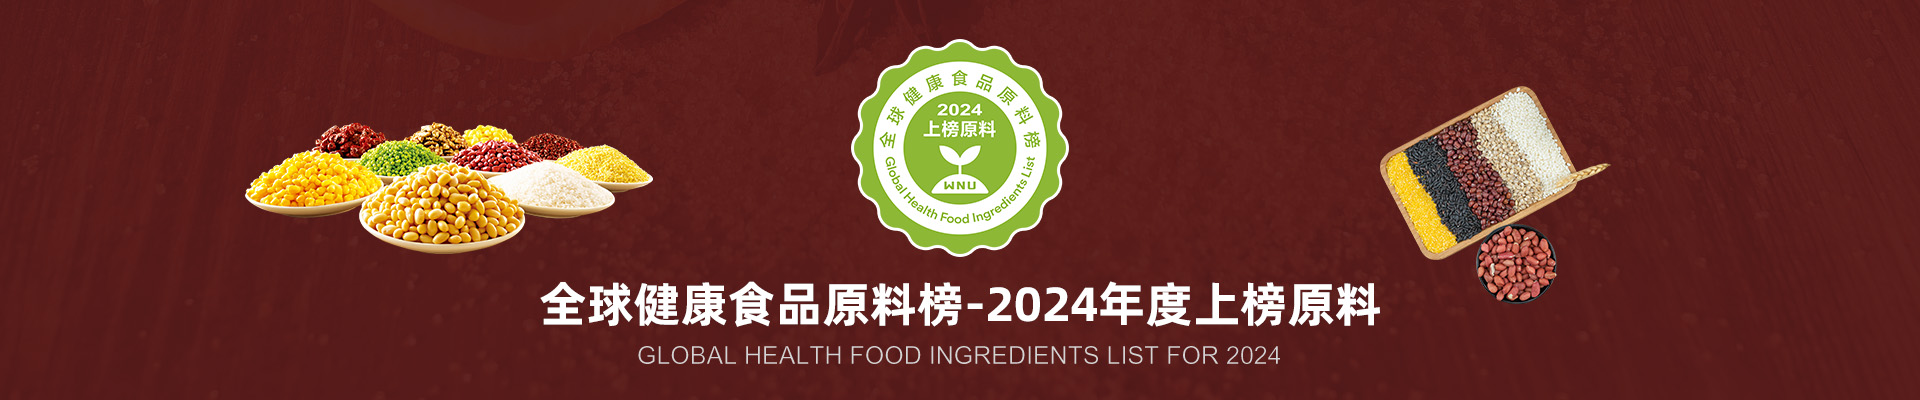 全球健康食品原料榜